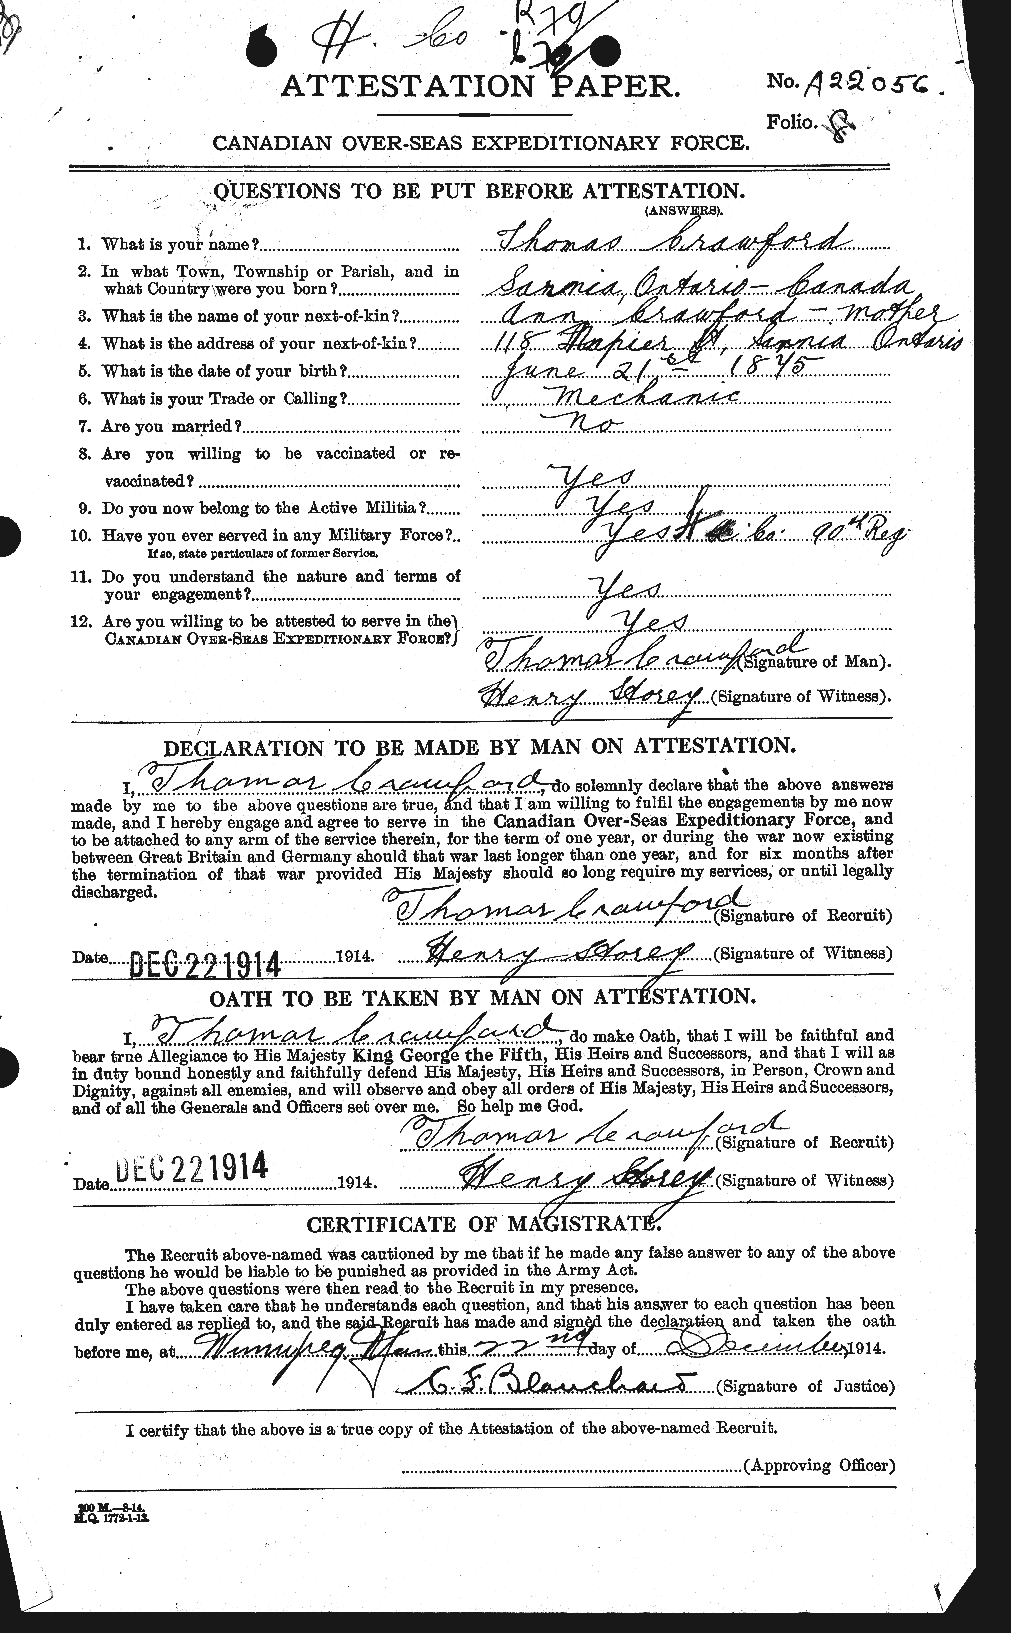 Dossiers du Personnel de la Première Guerre mondiale - CEC 061363a